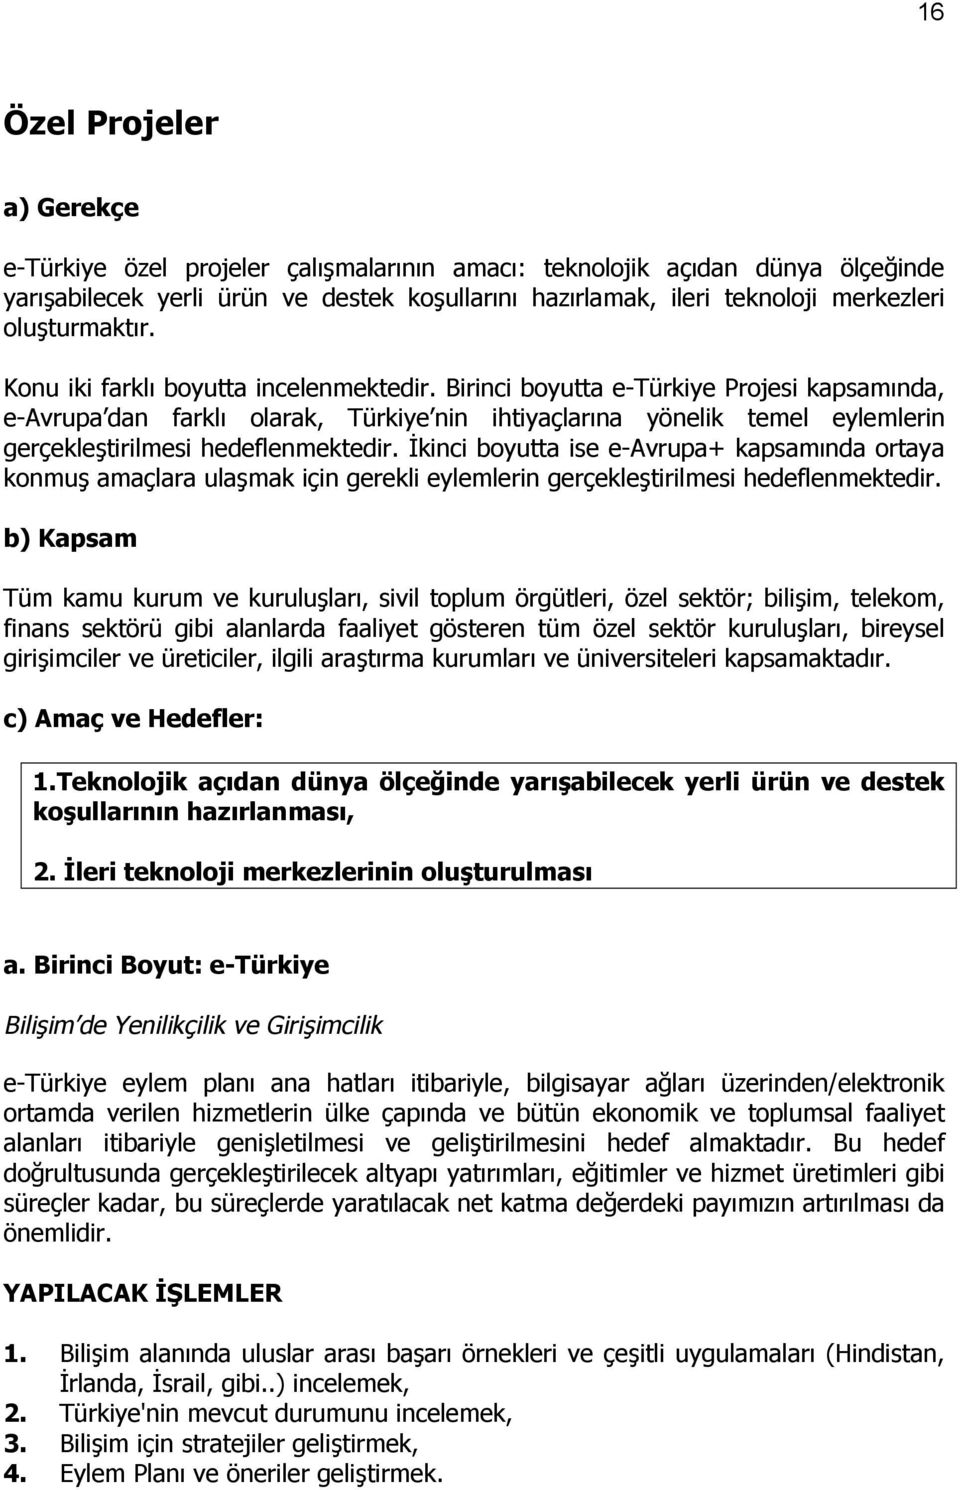 Birinci boyutta e-türkiye Projesi kapsamõnda, e-avrupa dan farklõ olarak, Türkiye nin ihtiyaçlarõna yönelik temel eylemlerin gerçekleştirilmesi hedeflenmektedir.